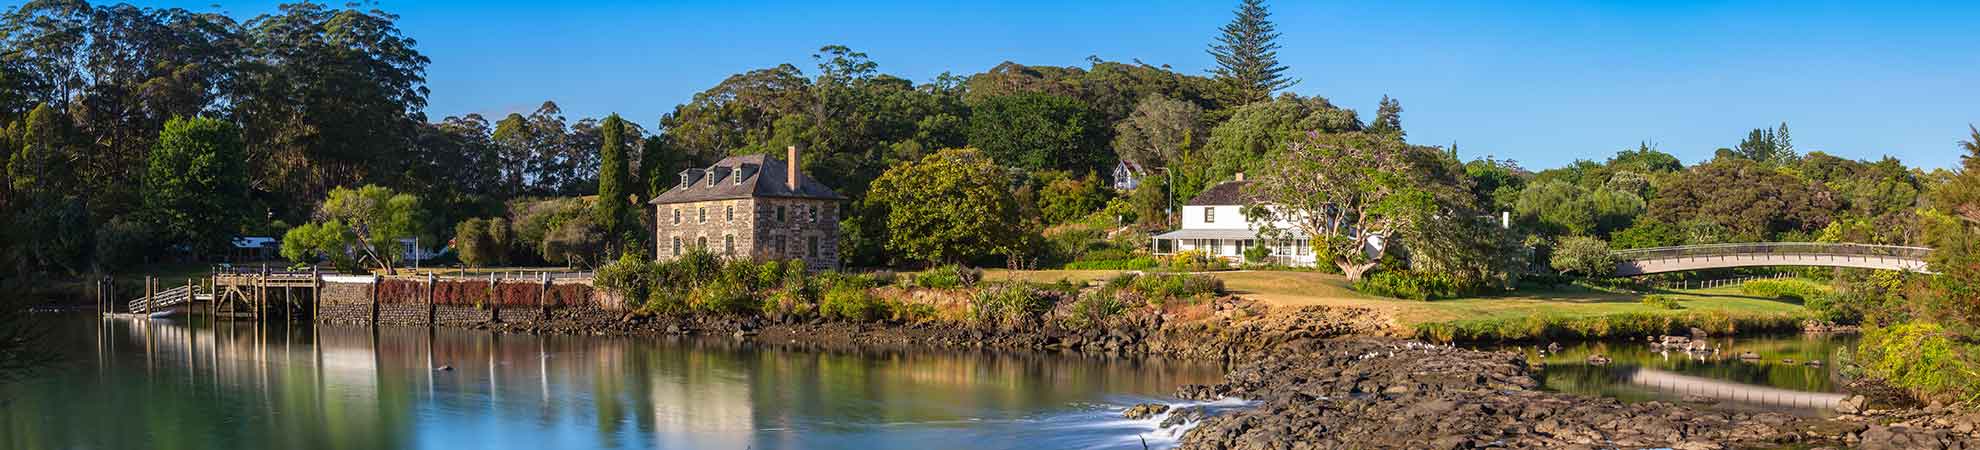 Quelle ville Nouvelle-Zélande visiter pour découvrir le meilleur du pays ?